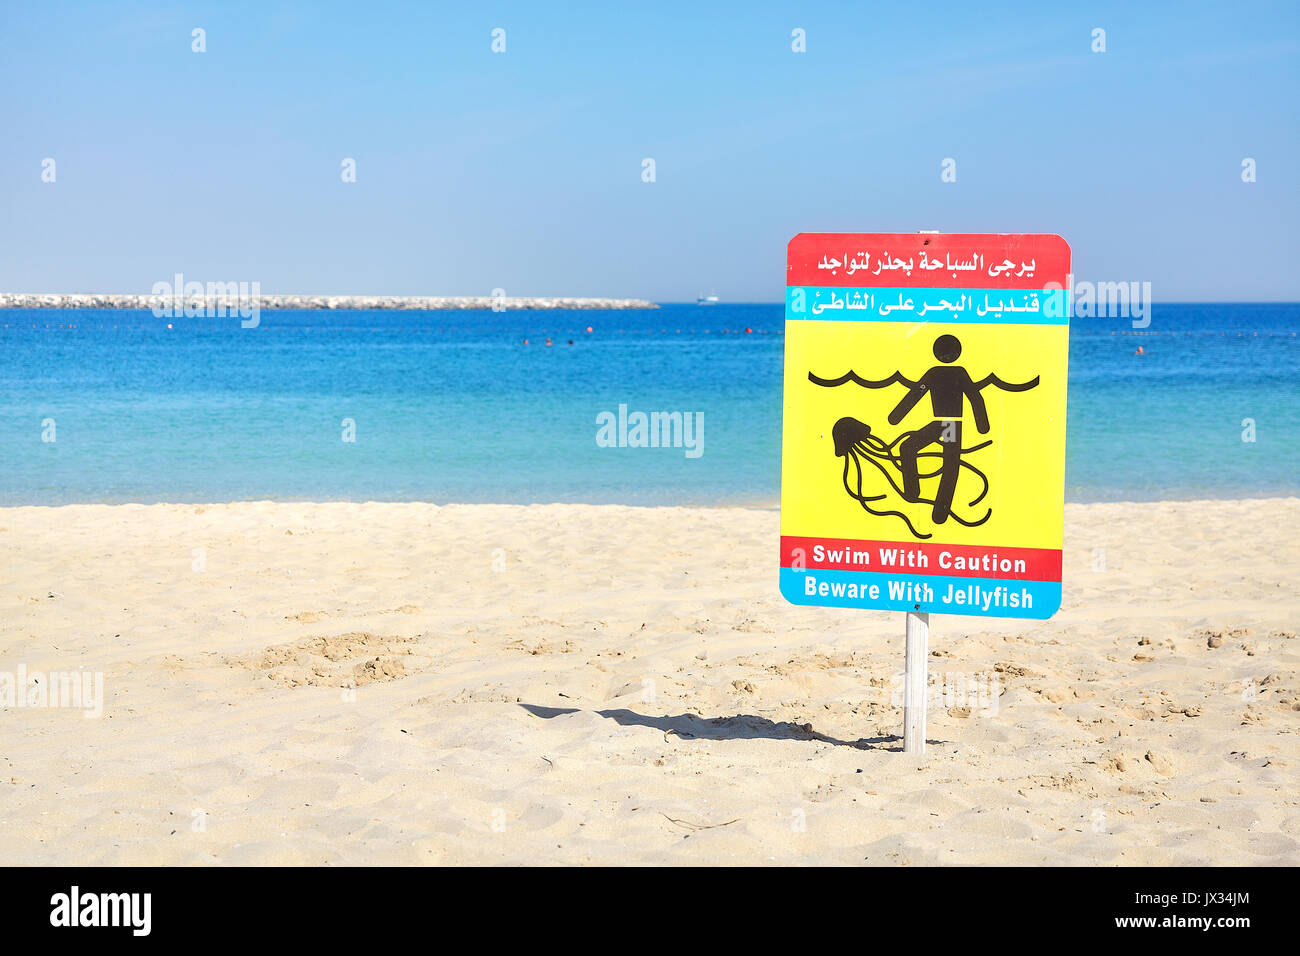 Fate attenzione con le meduse cartello segnaletico su una spiaggia in Dubai Emirati Arabi Uniti. Foto Stock